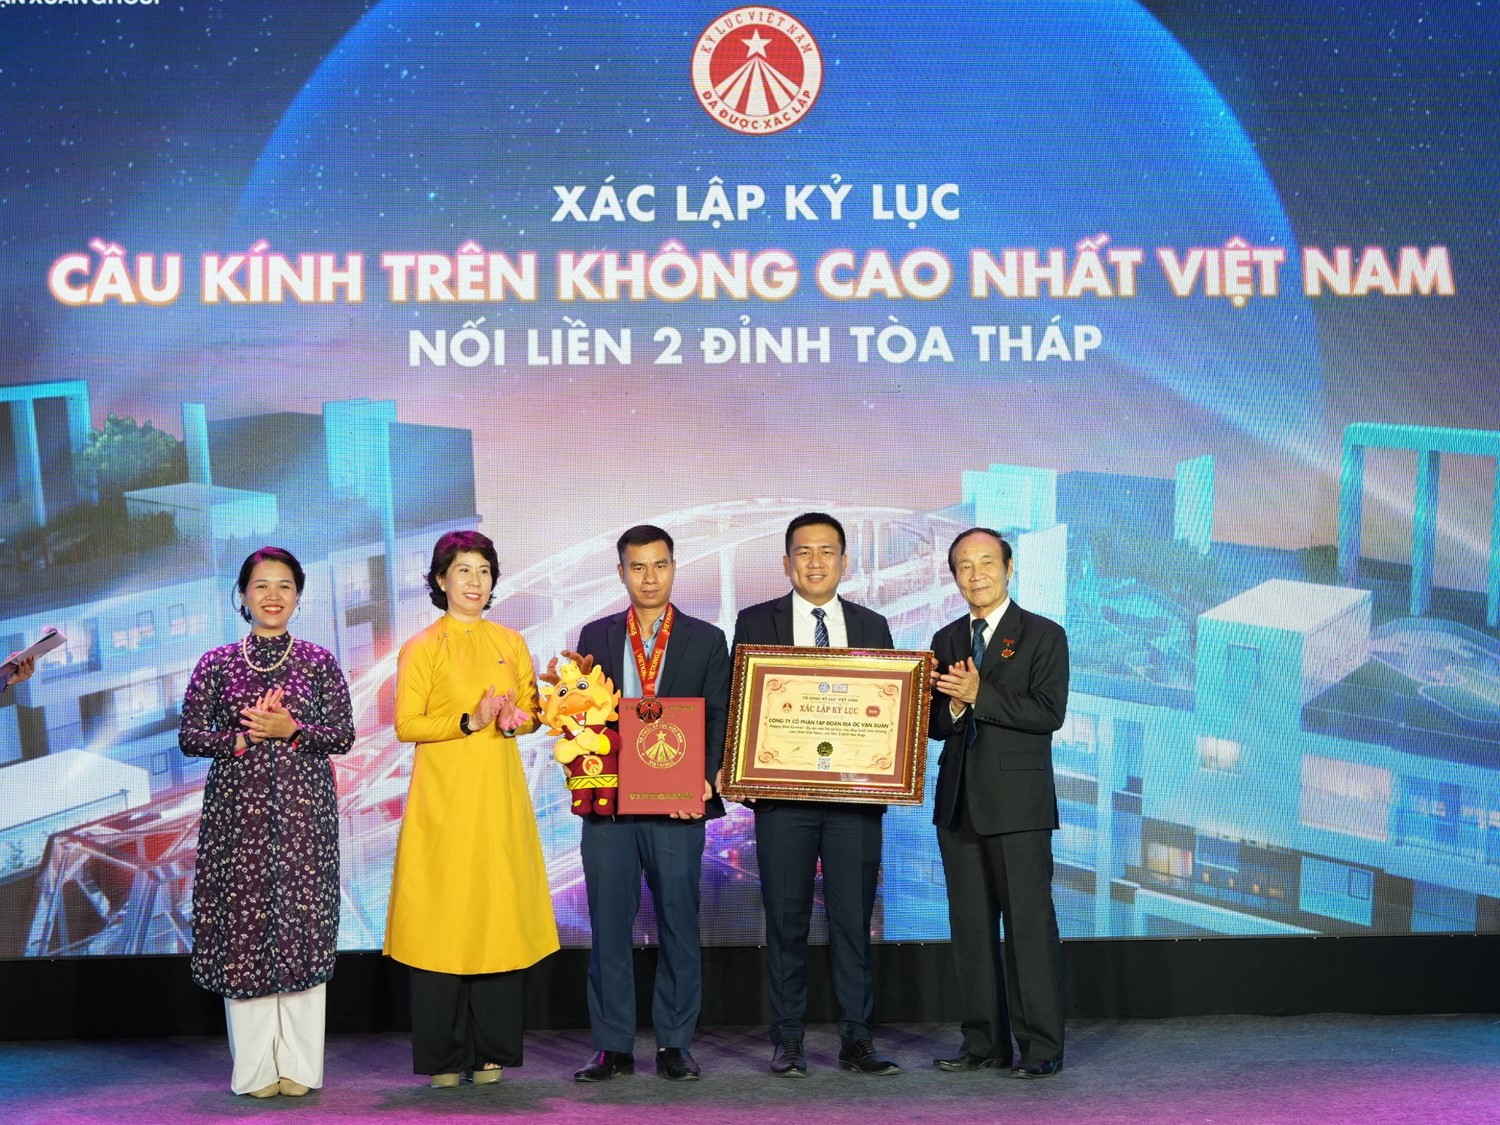 Kỷ lục “Cầu kính trên không cao nhất Việt Nam” là đích đến đầy tự hào cho mỗi chủ nhân sở hữu.